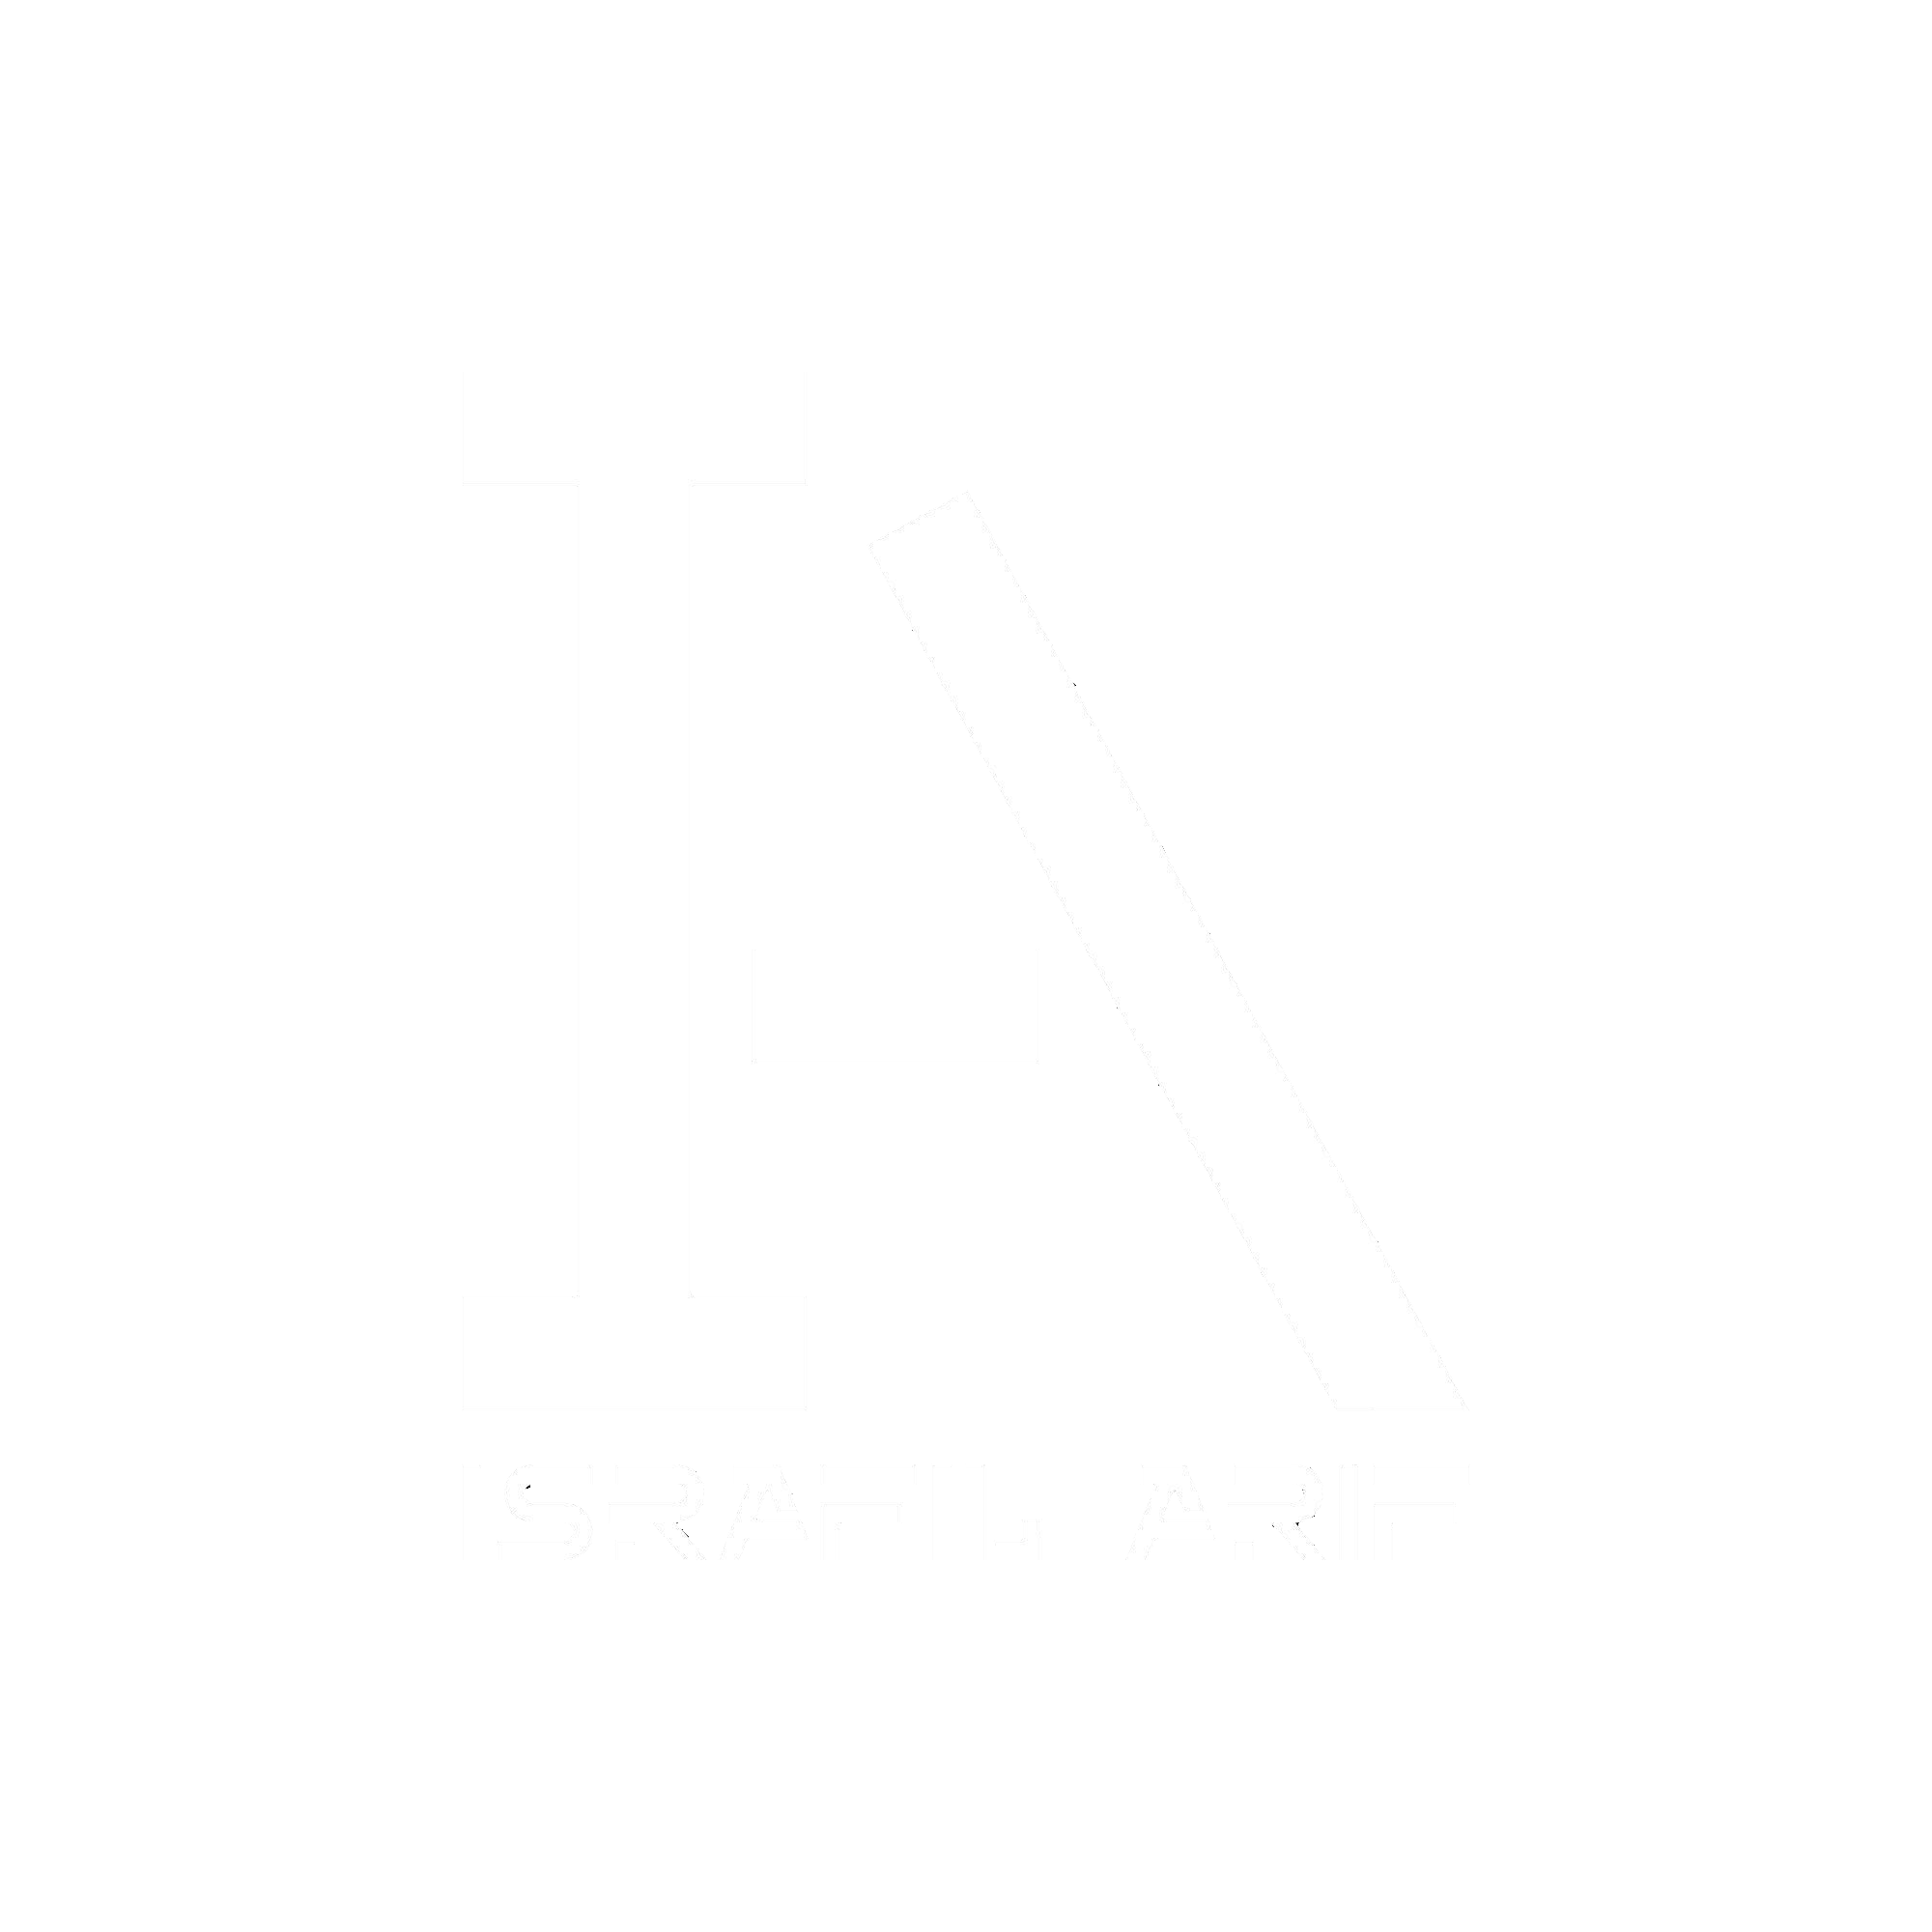 Israfil Arif | Graphic Designer